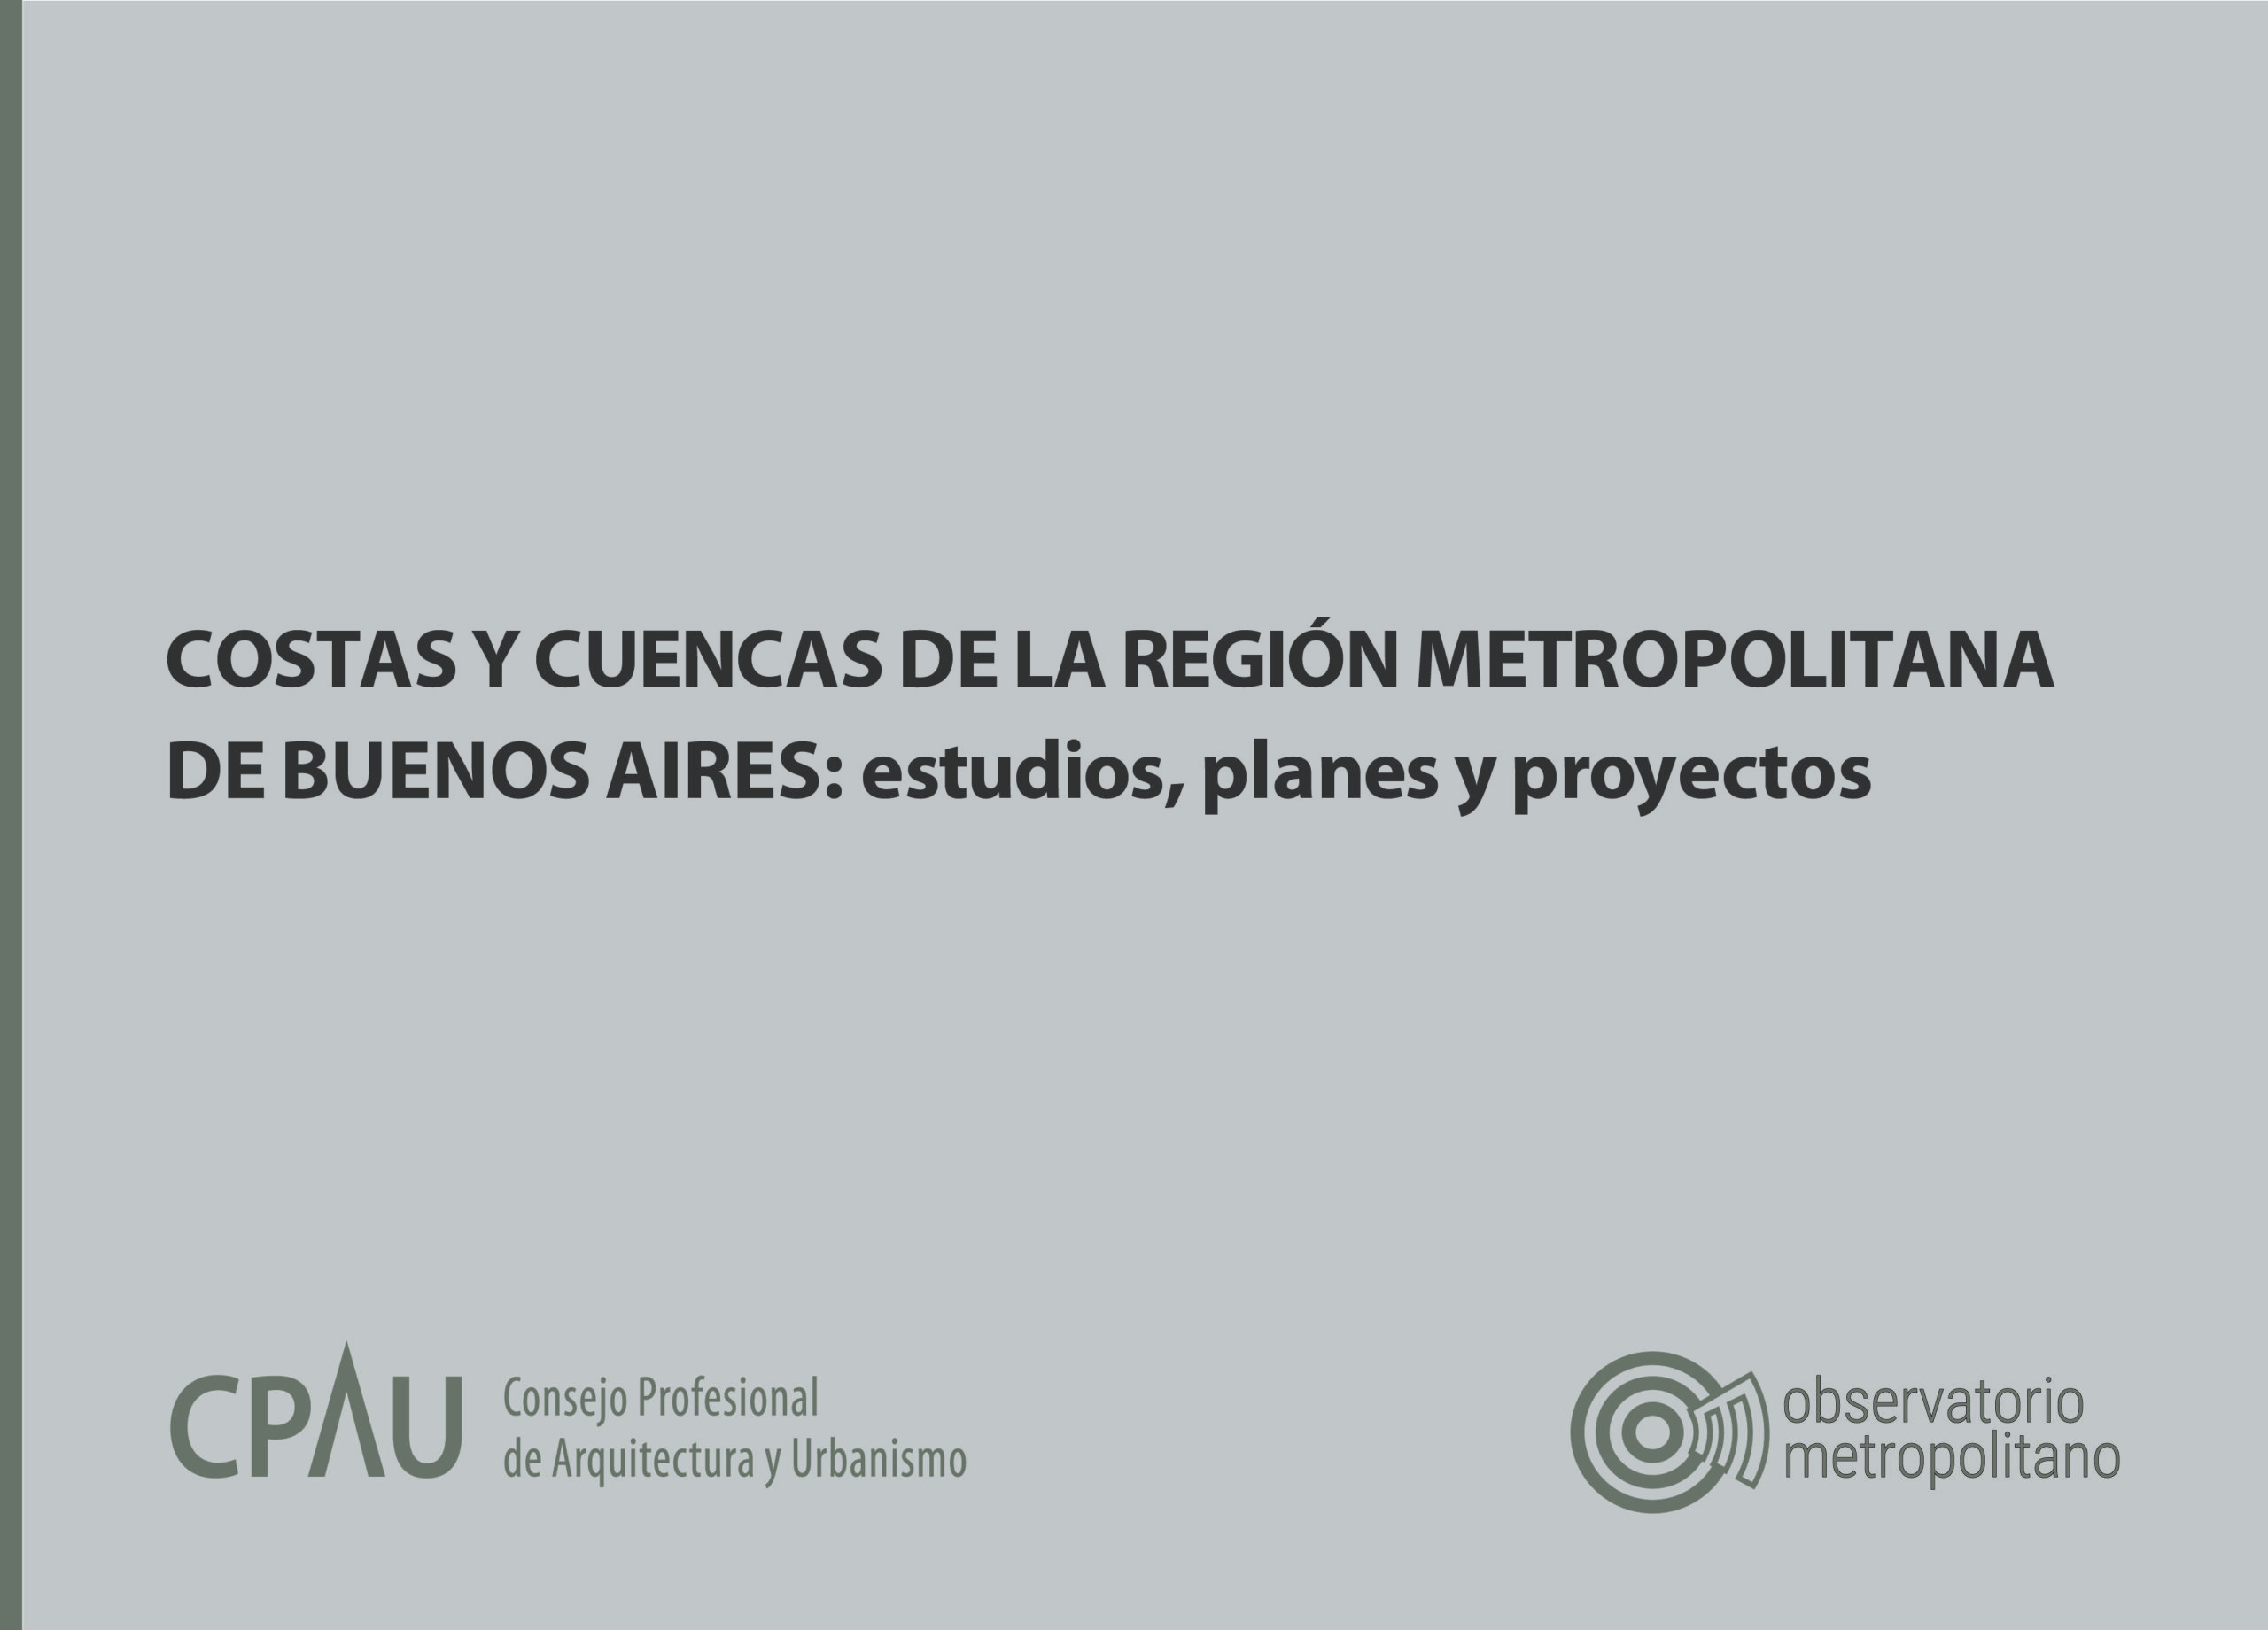 COSTAS Y CUENCAS DE LA REGION METROPOLITANA DE BUENOS AIRES ESTUDIOS PLANES Y PROYECTOS